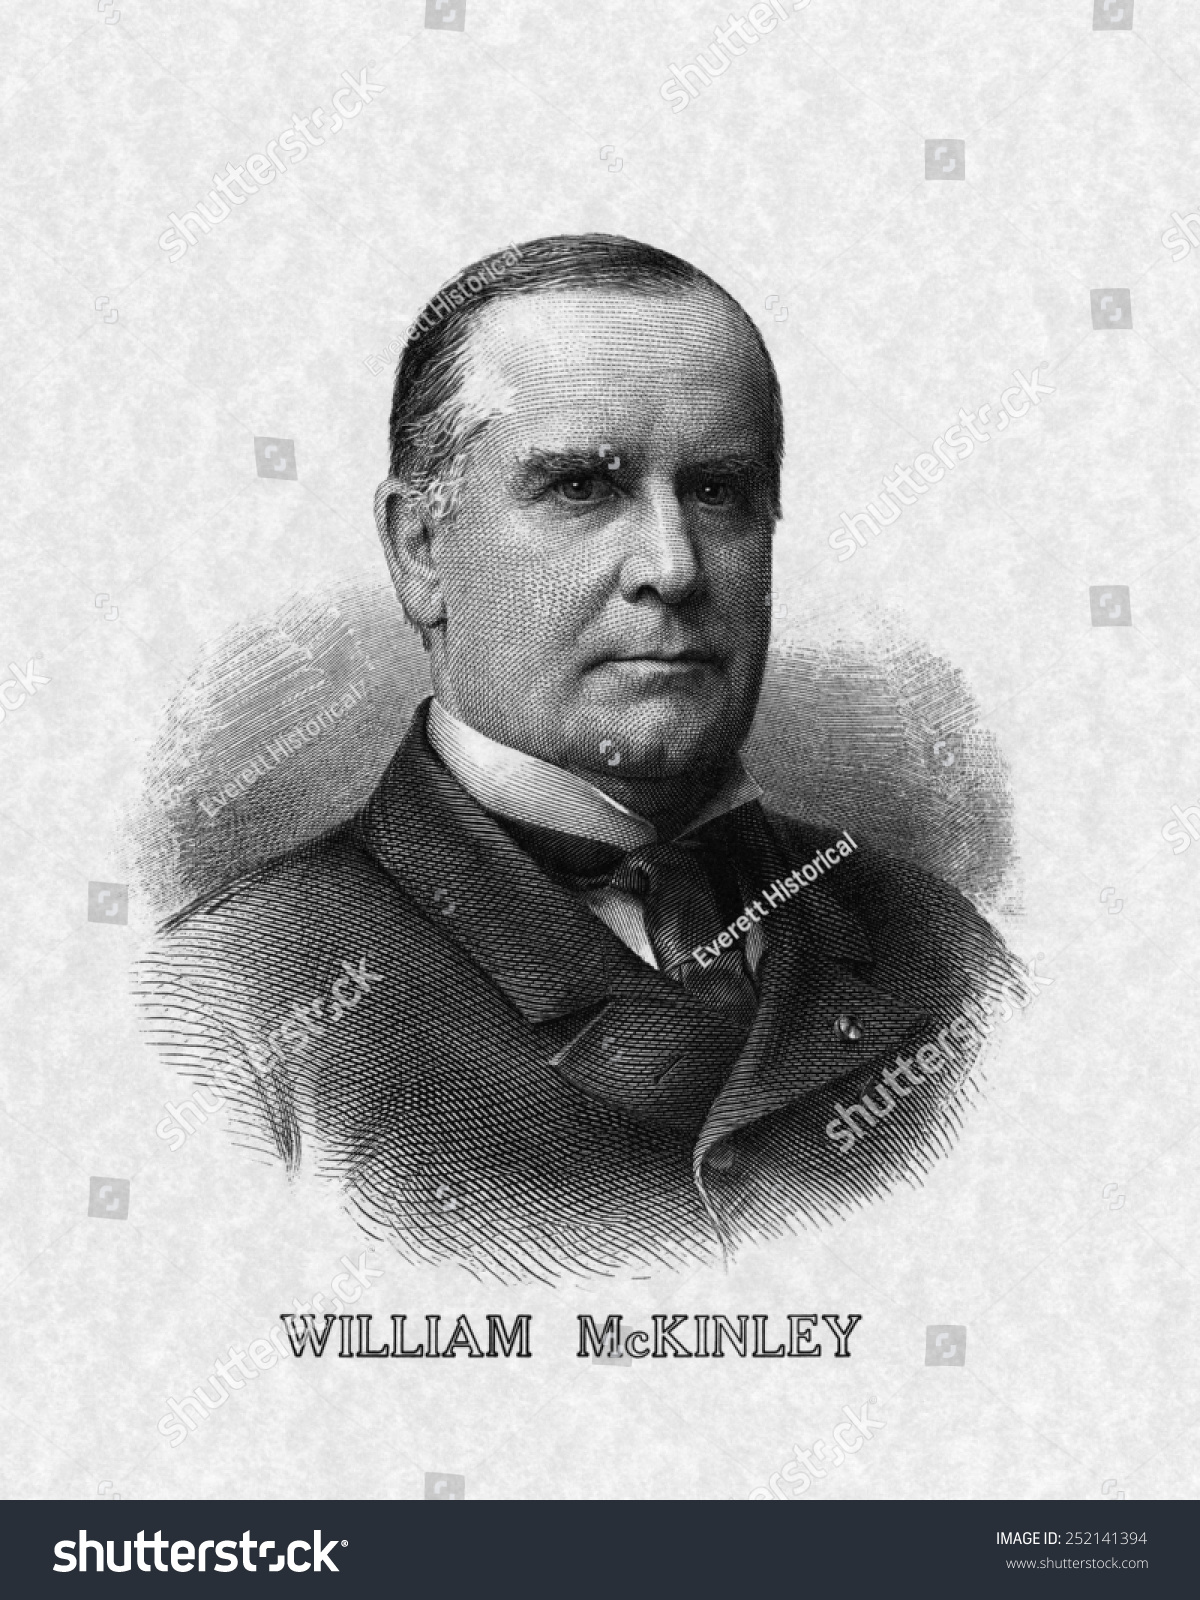 米国大統領 ウィリアム マッキンリー米大統領 のイラスト素材